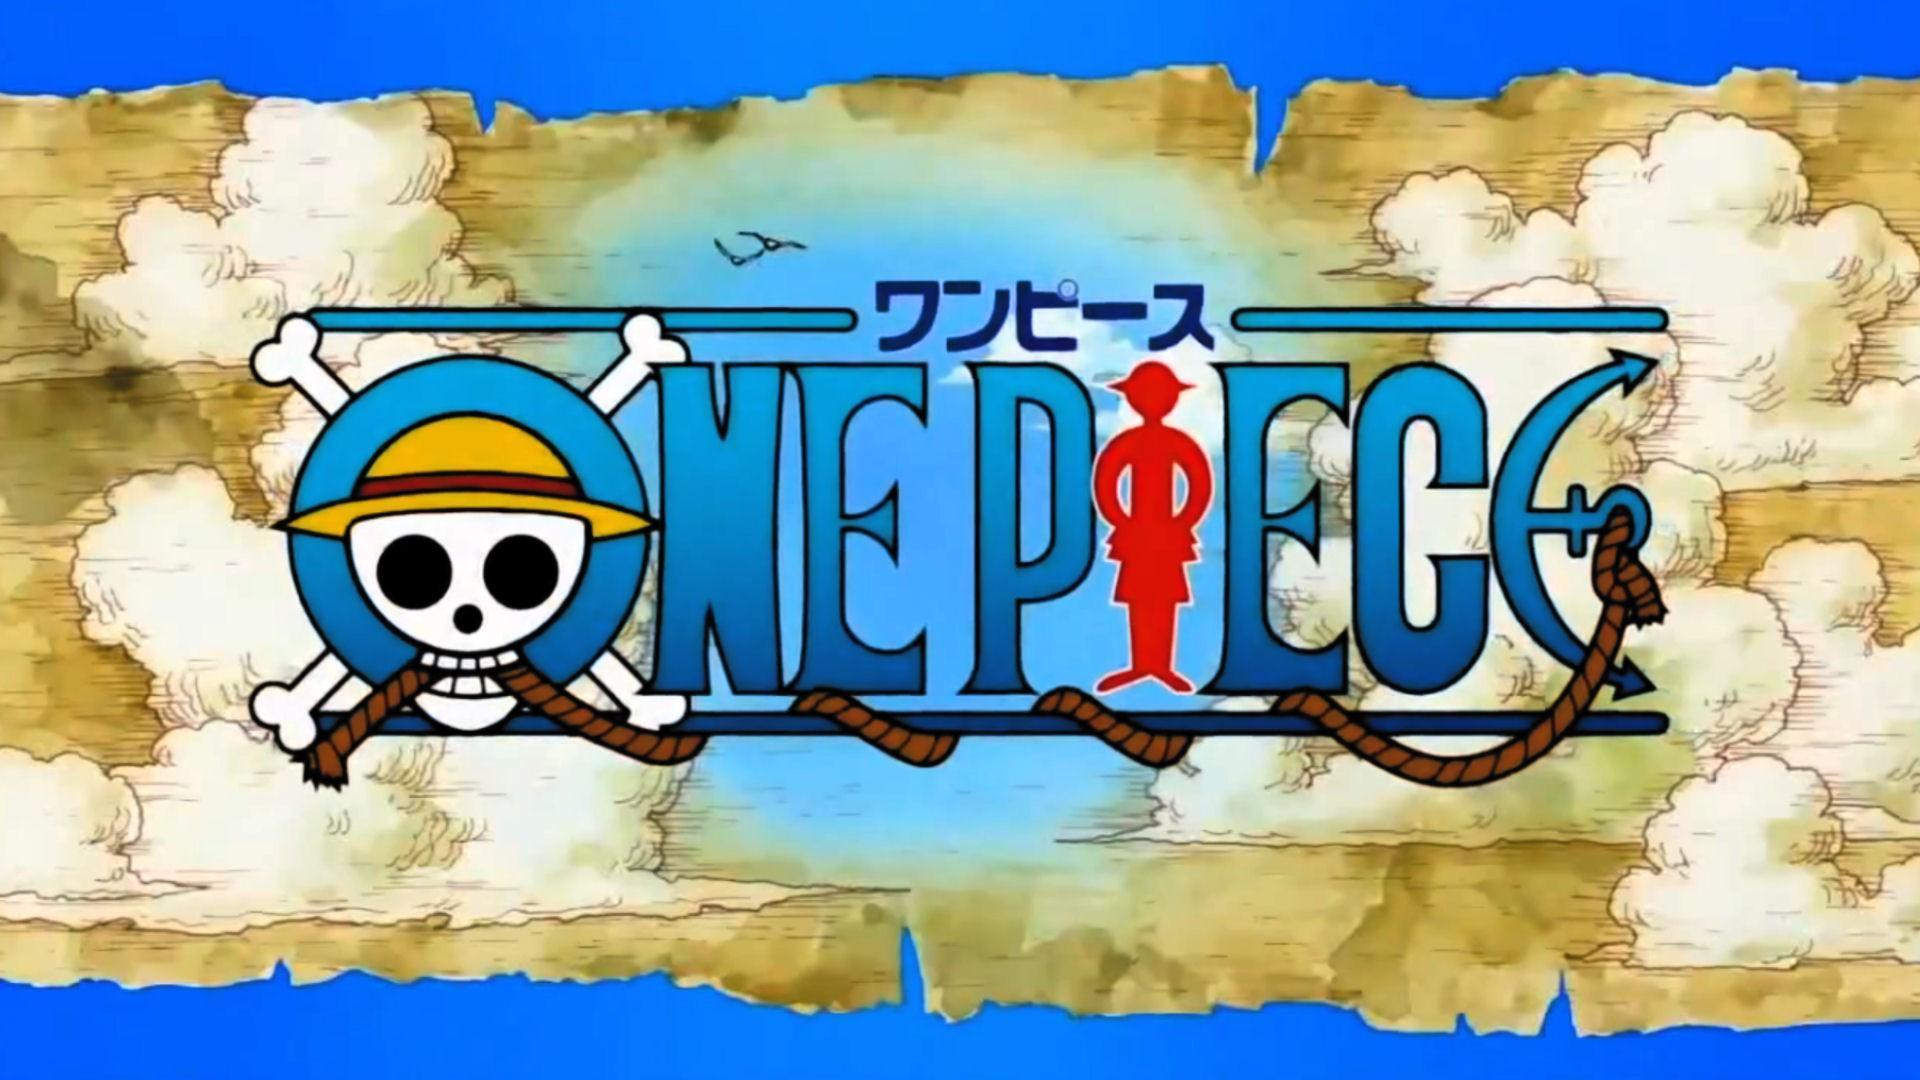 One Piece Anime Logo